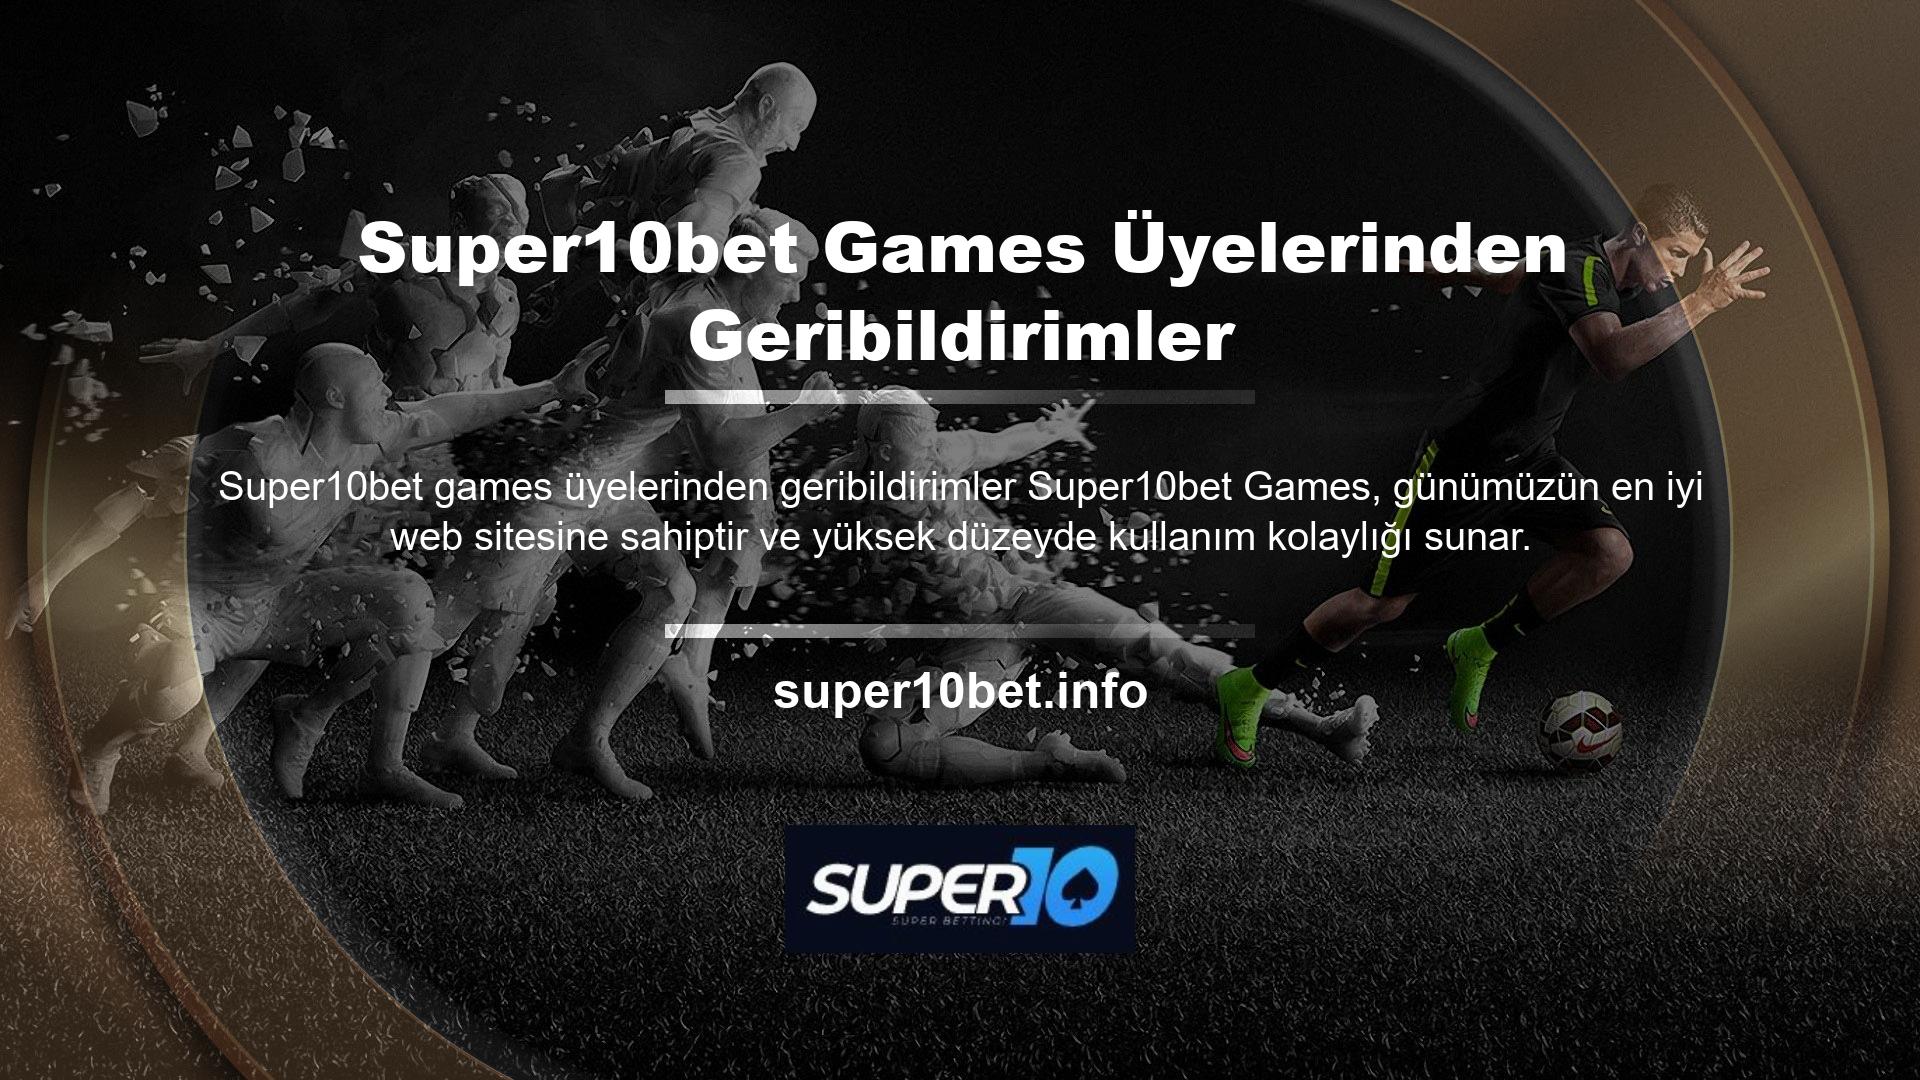 Şimdi kaydolun ve Super10bet Games'in premium üye geri bildirim hizmetinden ödüller kazanmaya başlayın